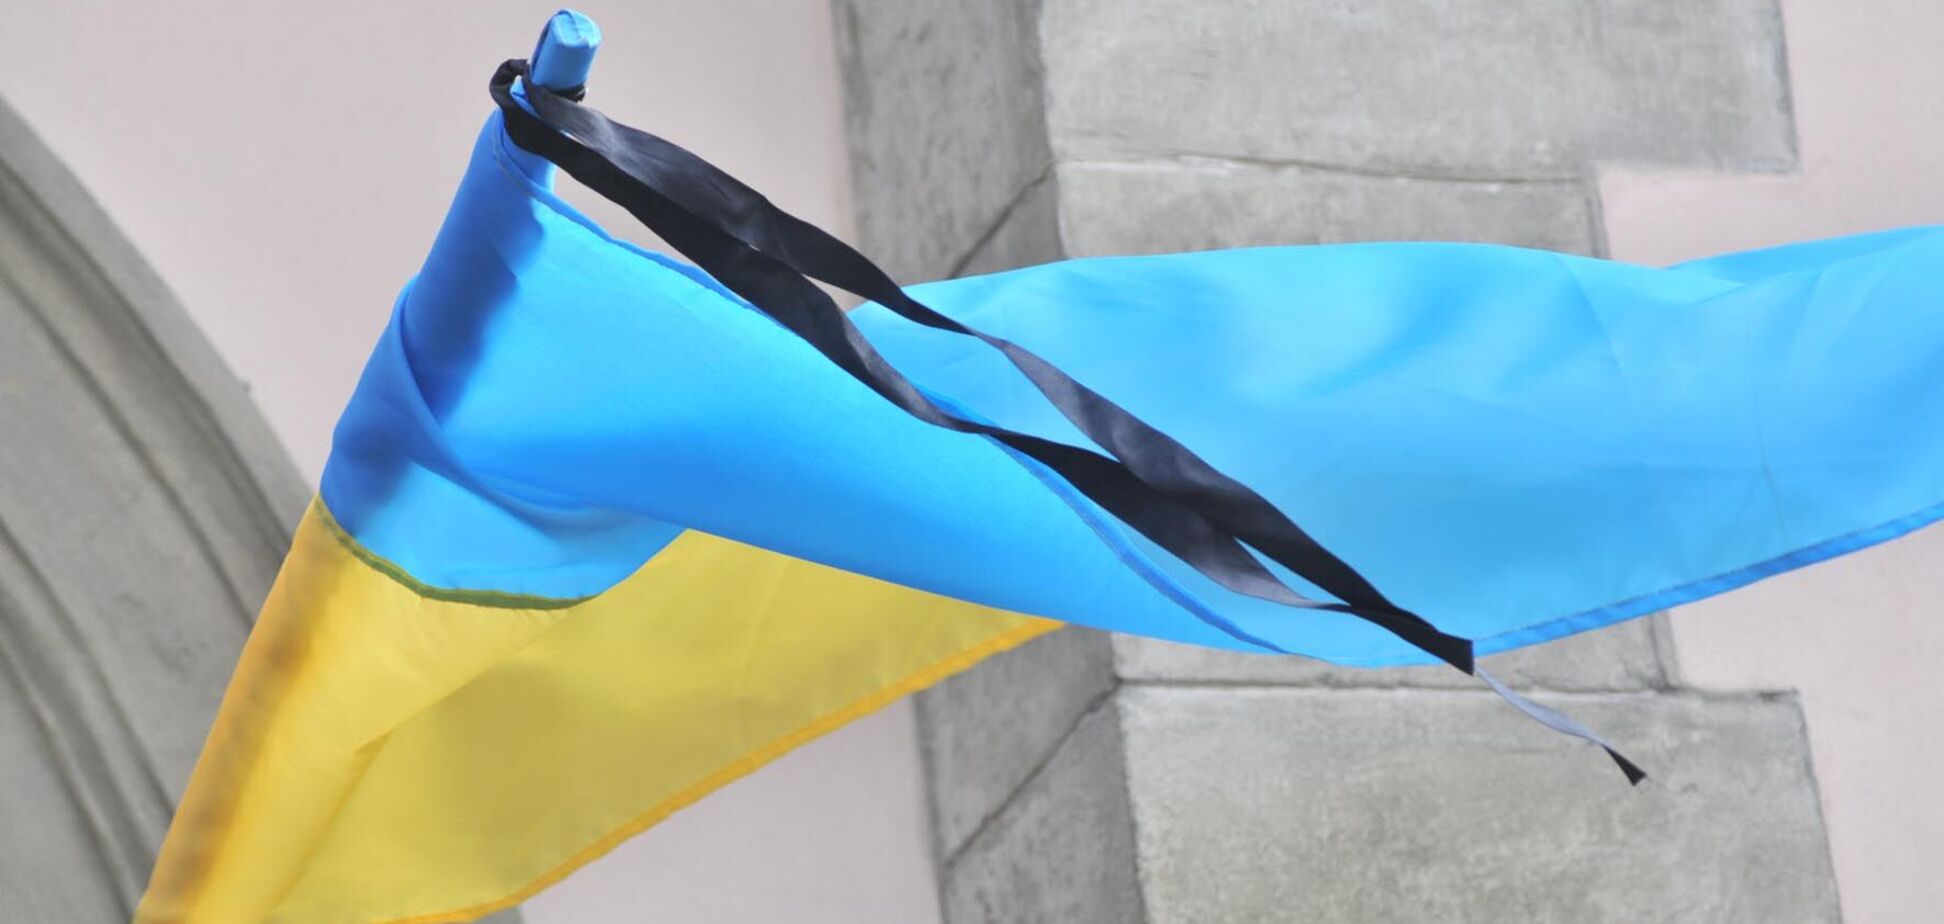 Світові лідери висловили співчуття Україні через авіакатастрофу в Чугуєві. Фото: Надзвичайна ситуація